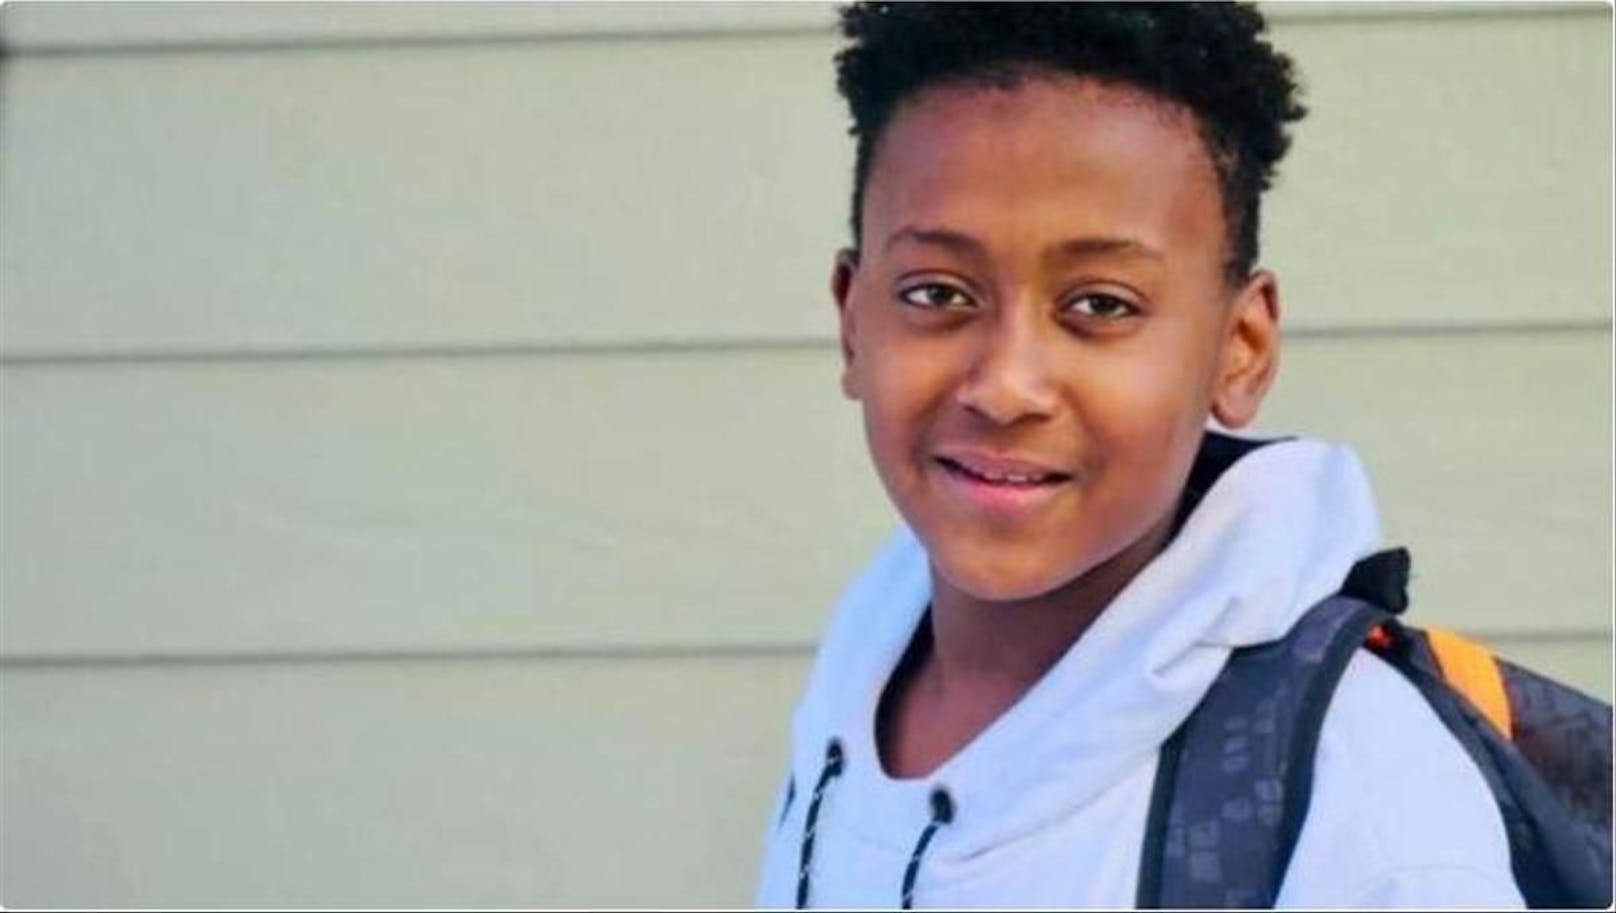 Der 12-jährige Joshua Haileyesus aus Denver im US-Bundesstaat Colorado muss nach seinem Hirntod von Beatmungsgeräten am Leben erhalten werden.